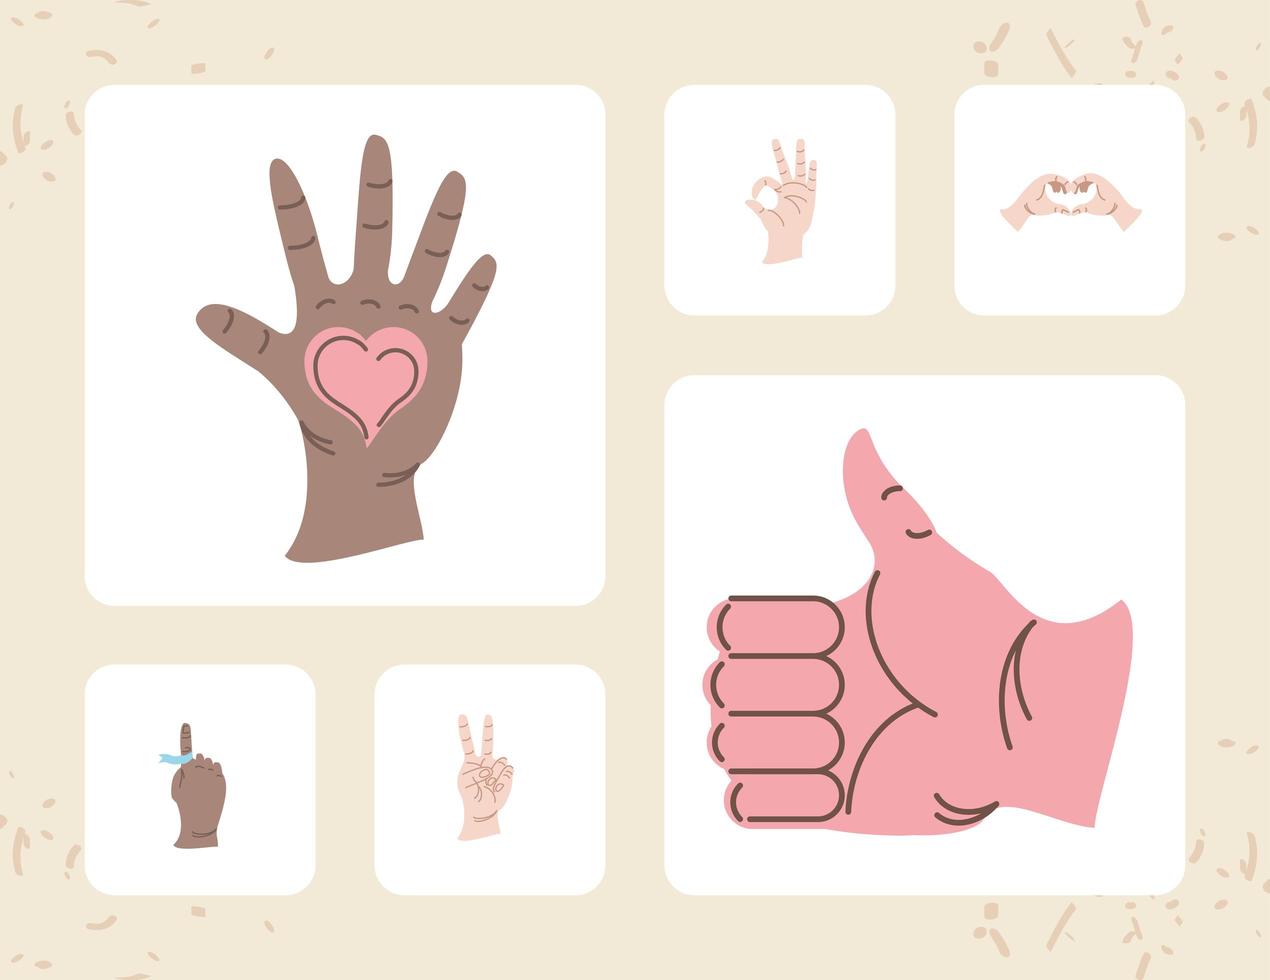 hands different gesture vector